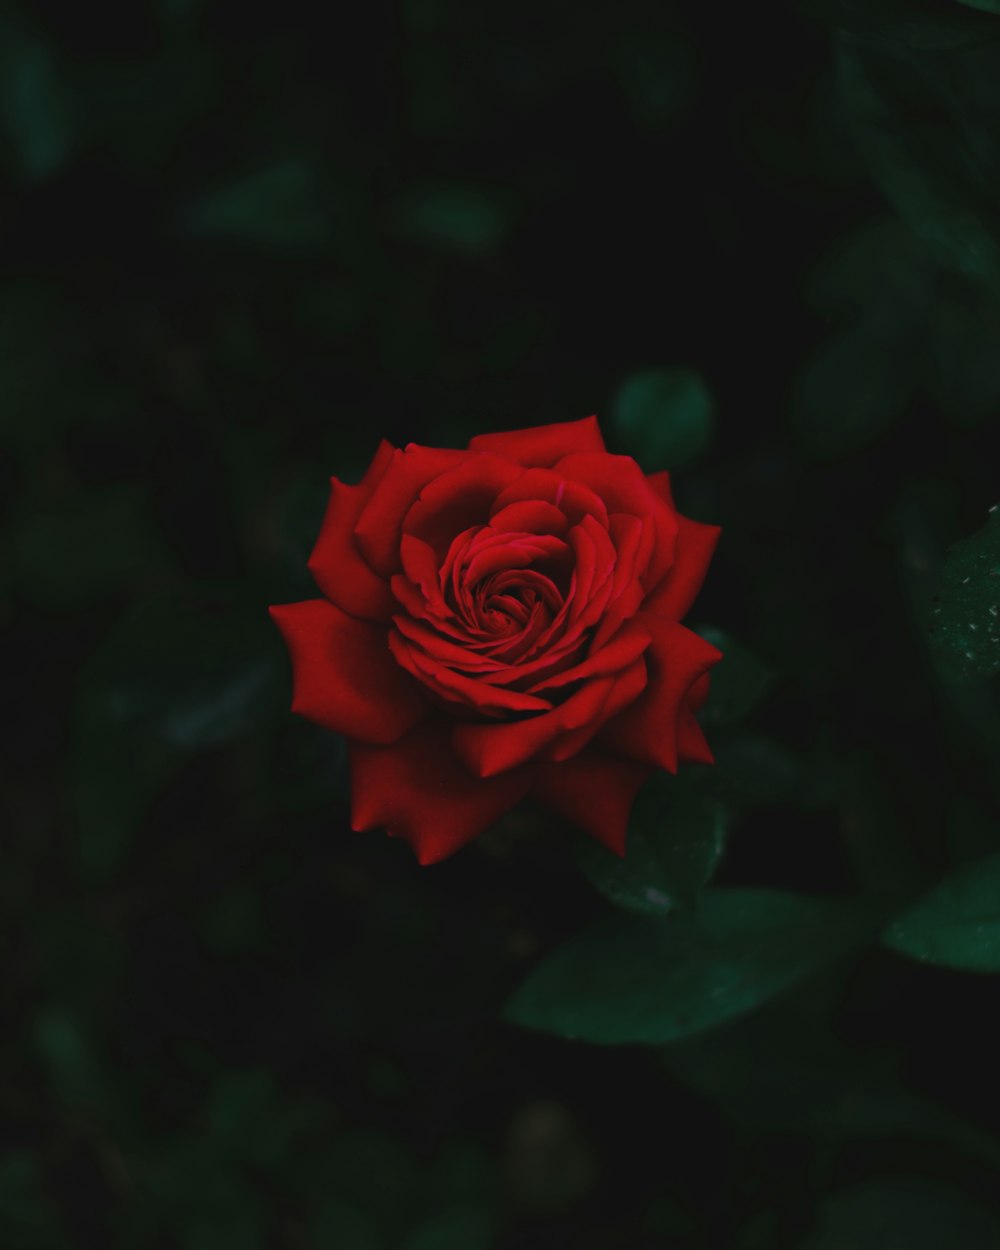 rosa rossa in fiore nella fotografia ravvicinata